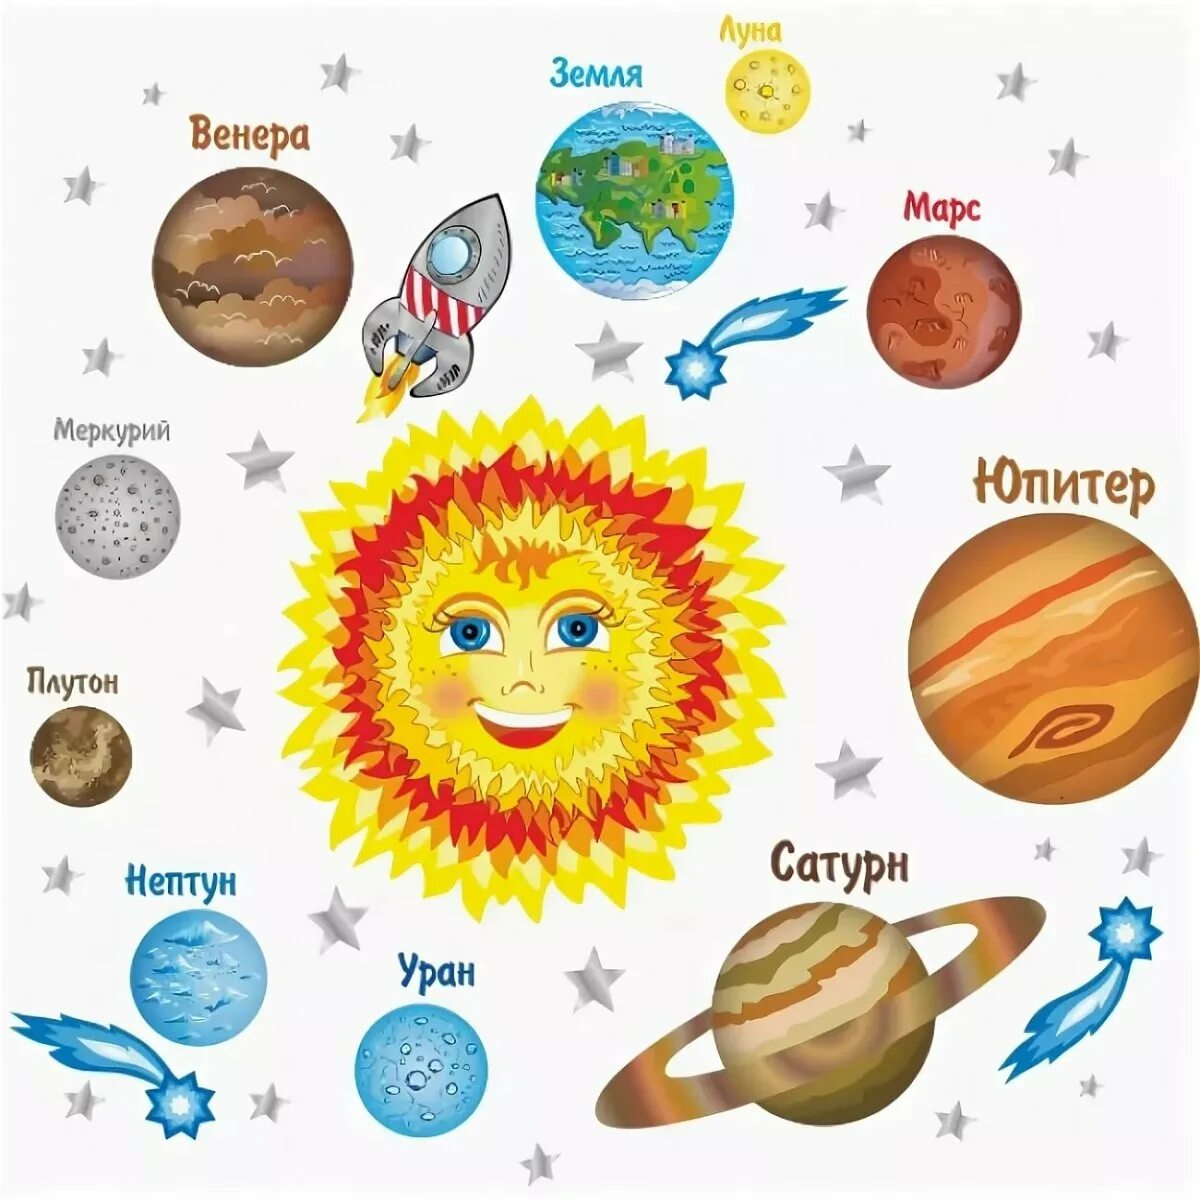 Солнечная система рисунок с названиями планет для детей. Солнечная система для дет. С12нечная система 32я 3етей. Планеты Солнечная системы д я детей. Про планеты детям 5